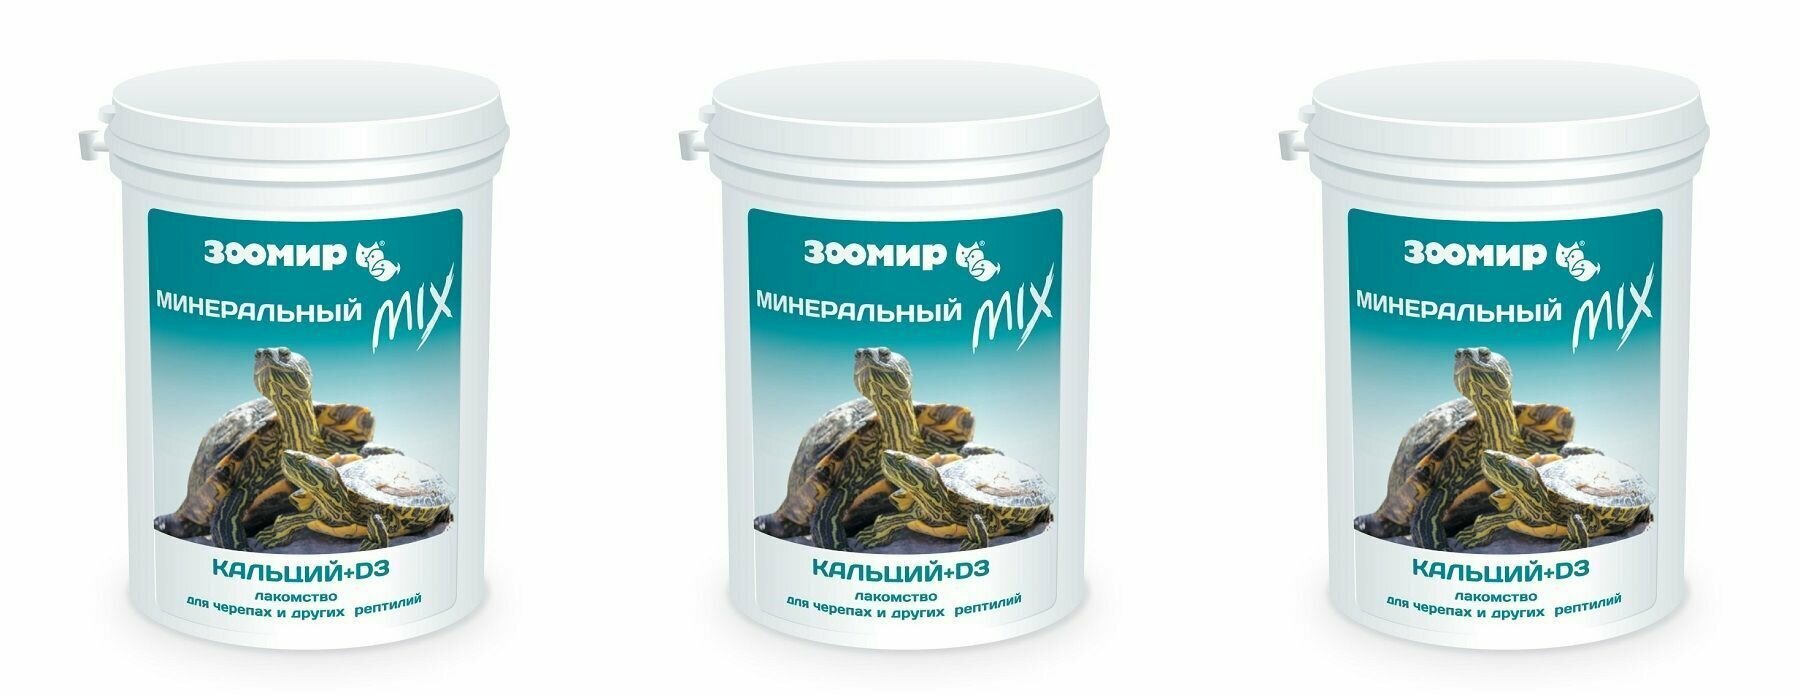 Зоомир Минеральная подкормка для черепах и других рептилий "Минеральный MIX" с кальцием и D3, 100 г, 3 шт